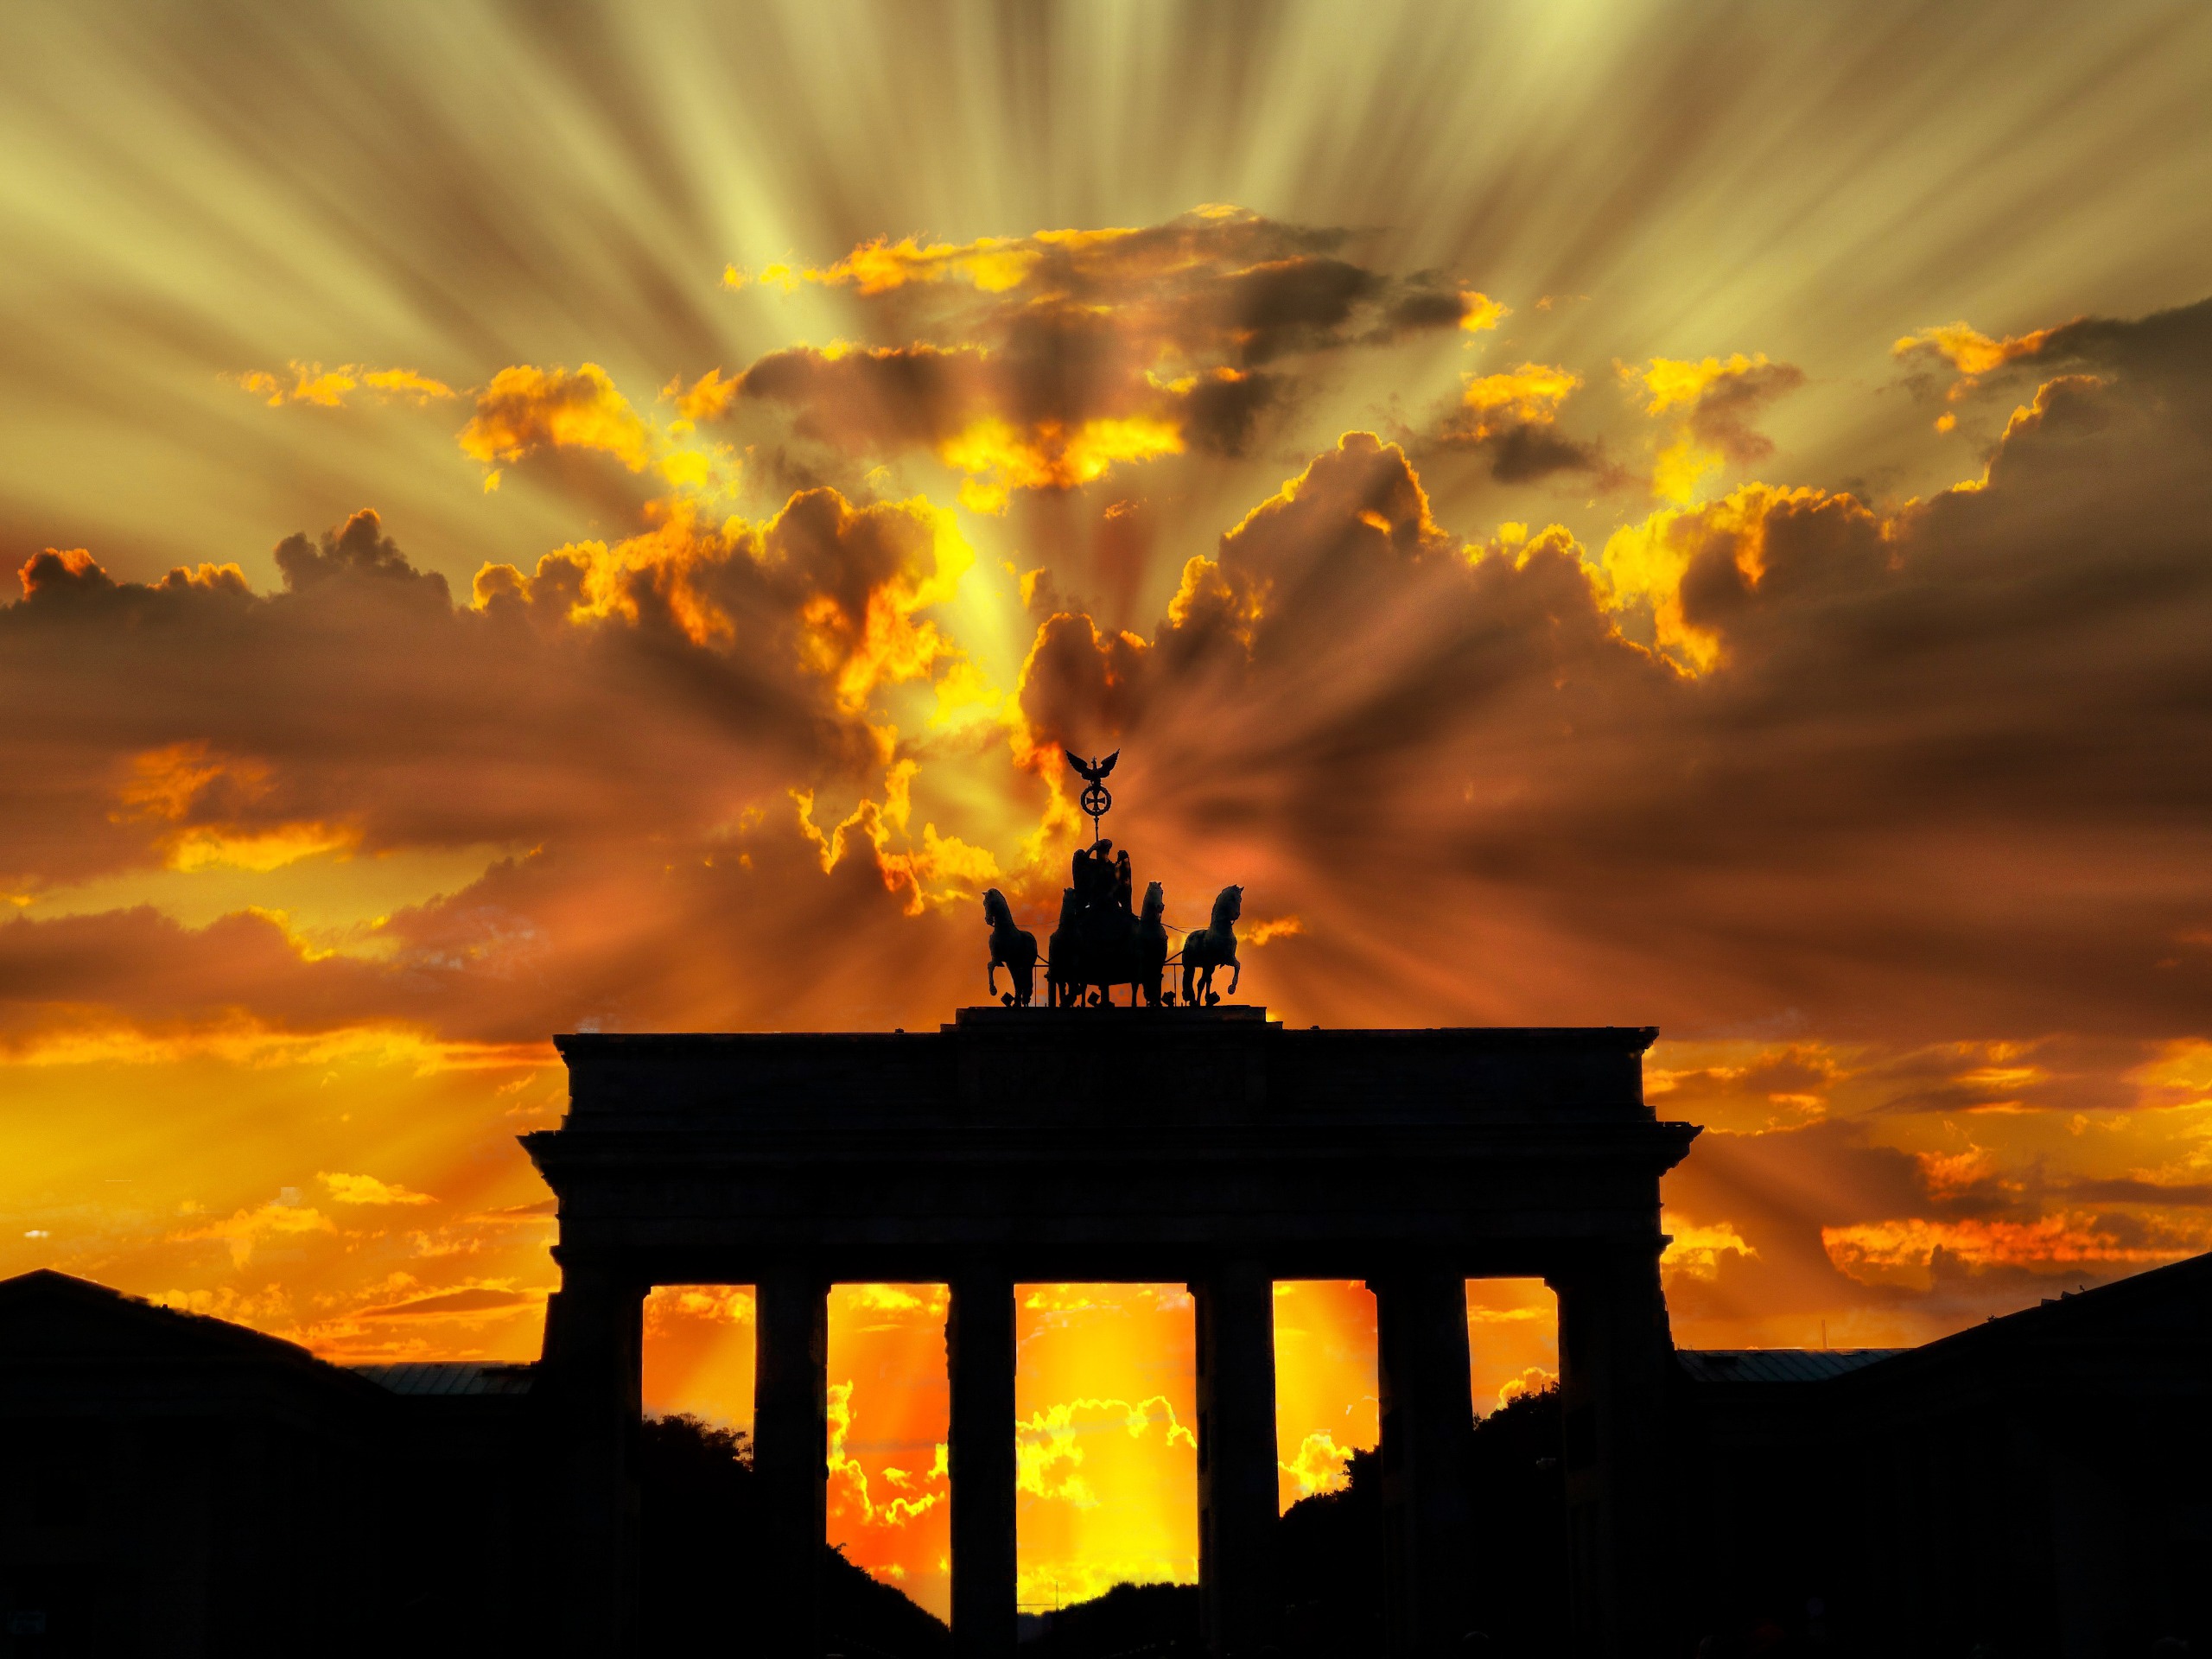 Berlino - Porta di Brandeburgo - Eventi Giorno della libertà da Pxhere - Pubblico dominio https://pxhere.com/en/photo/1009911